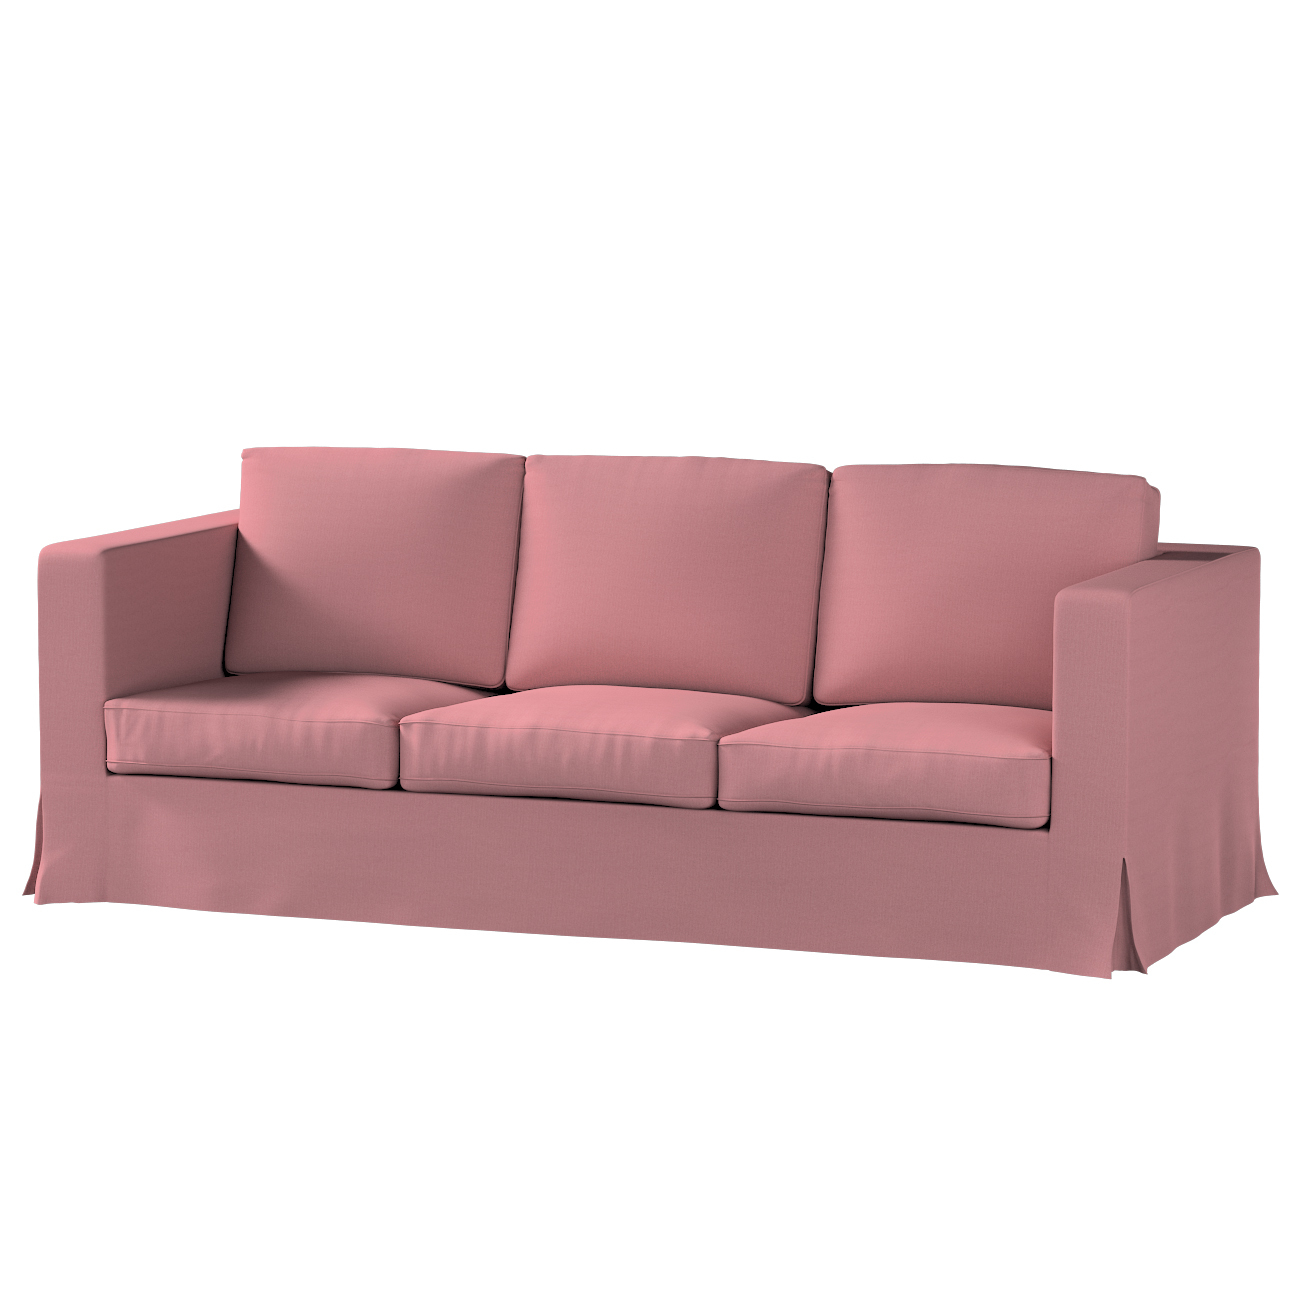 Bezug für Karlanda 3-Sitzer Sofa nicht ausklappbar, lang, altrosa, Bezug fü günstig online kaufen